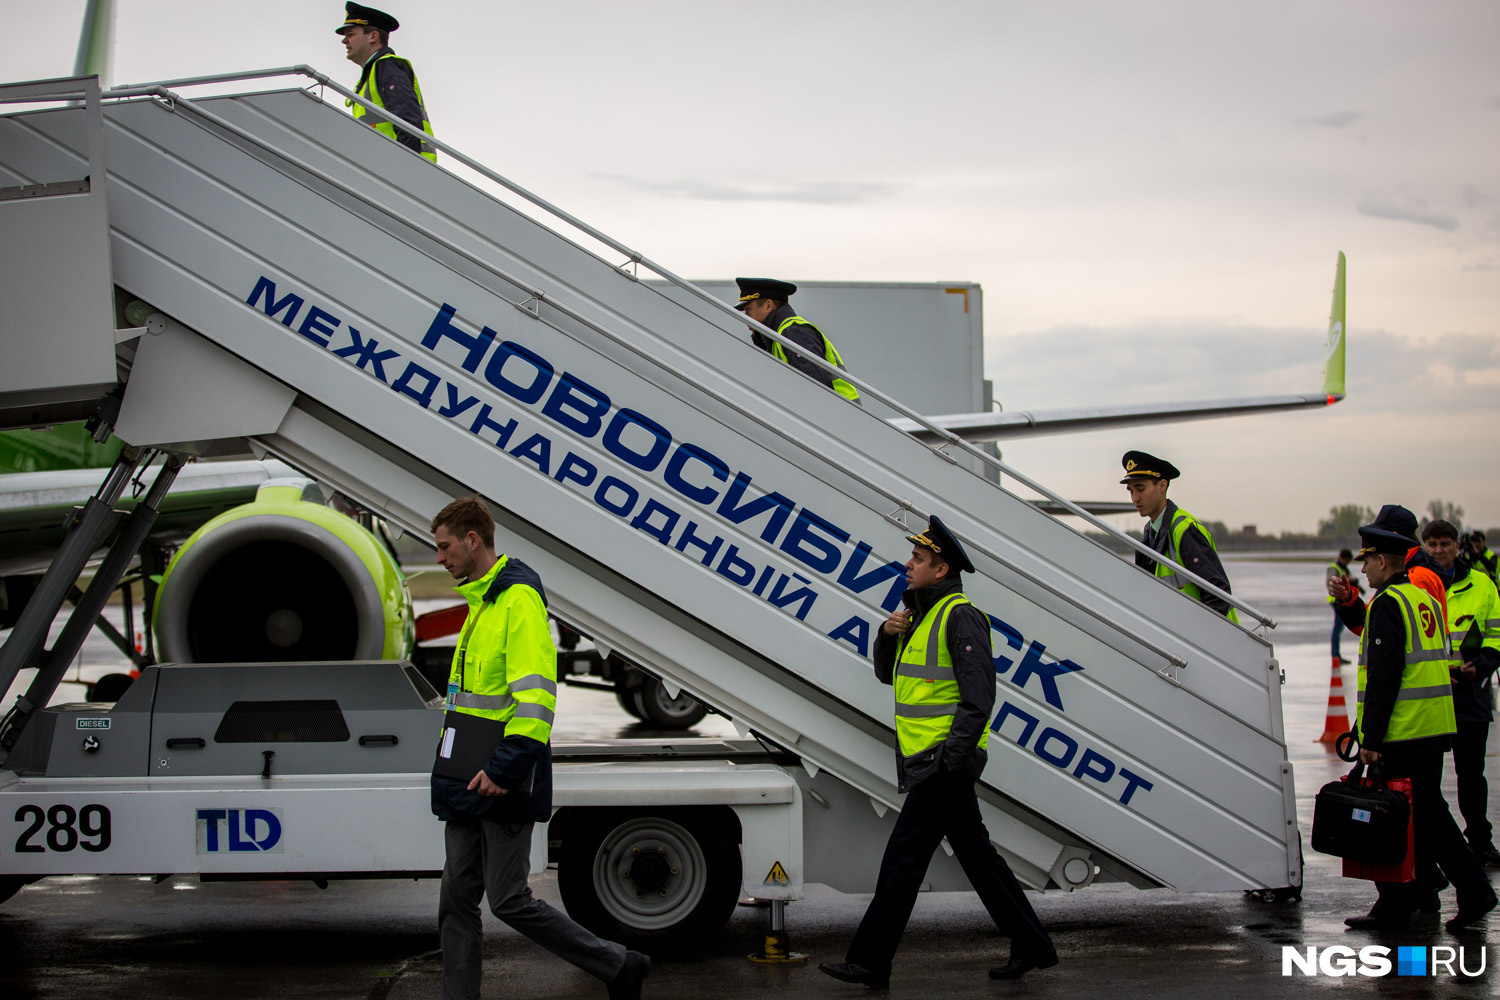 Всего S7 планирует сократить присутствие в Москве на 15%. Часть сотрудников будет переброшена в Сибирь, часть может уйти в другие авиакомпании